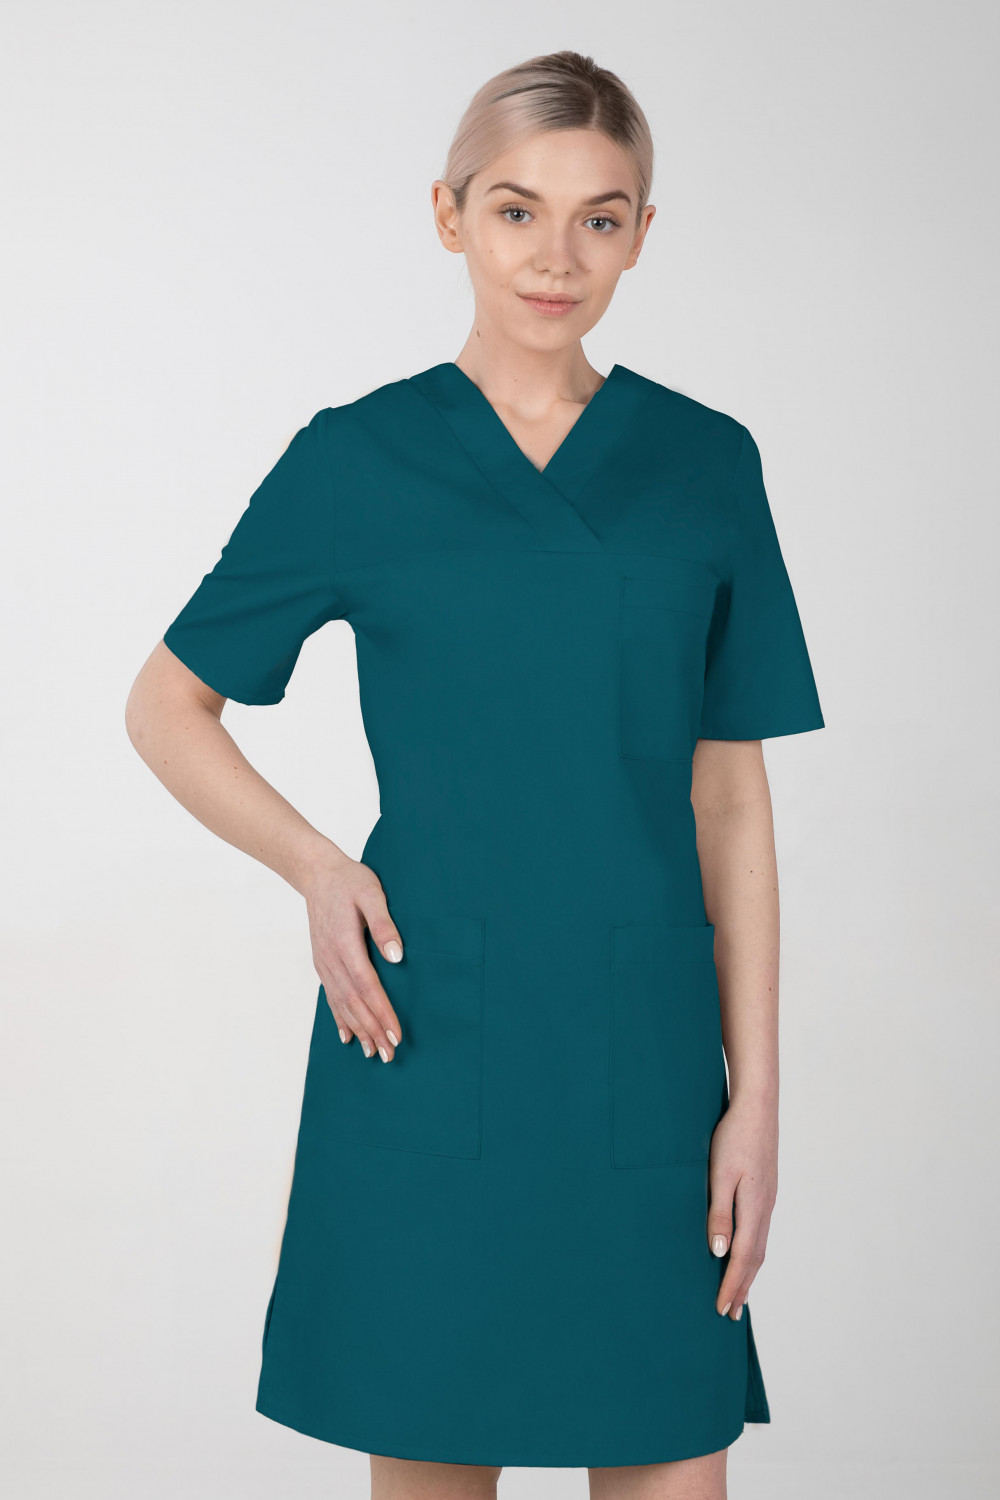 M-076FX Sukienka damska elastyczna medyczna fartuch kosmetyczny kolor ciemna zieleń